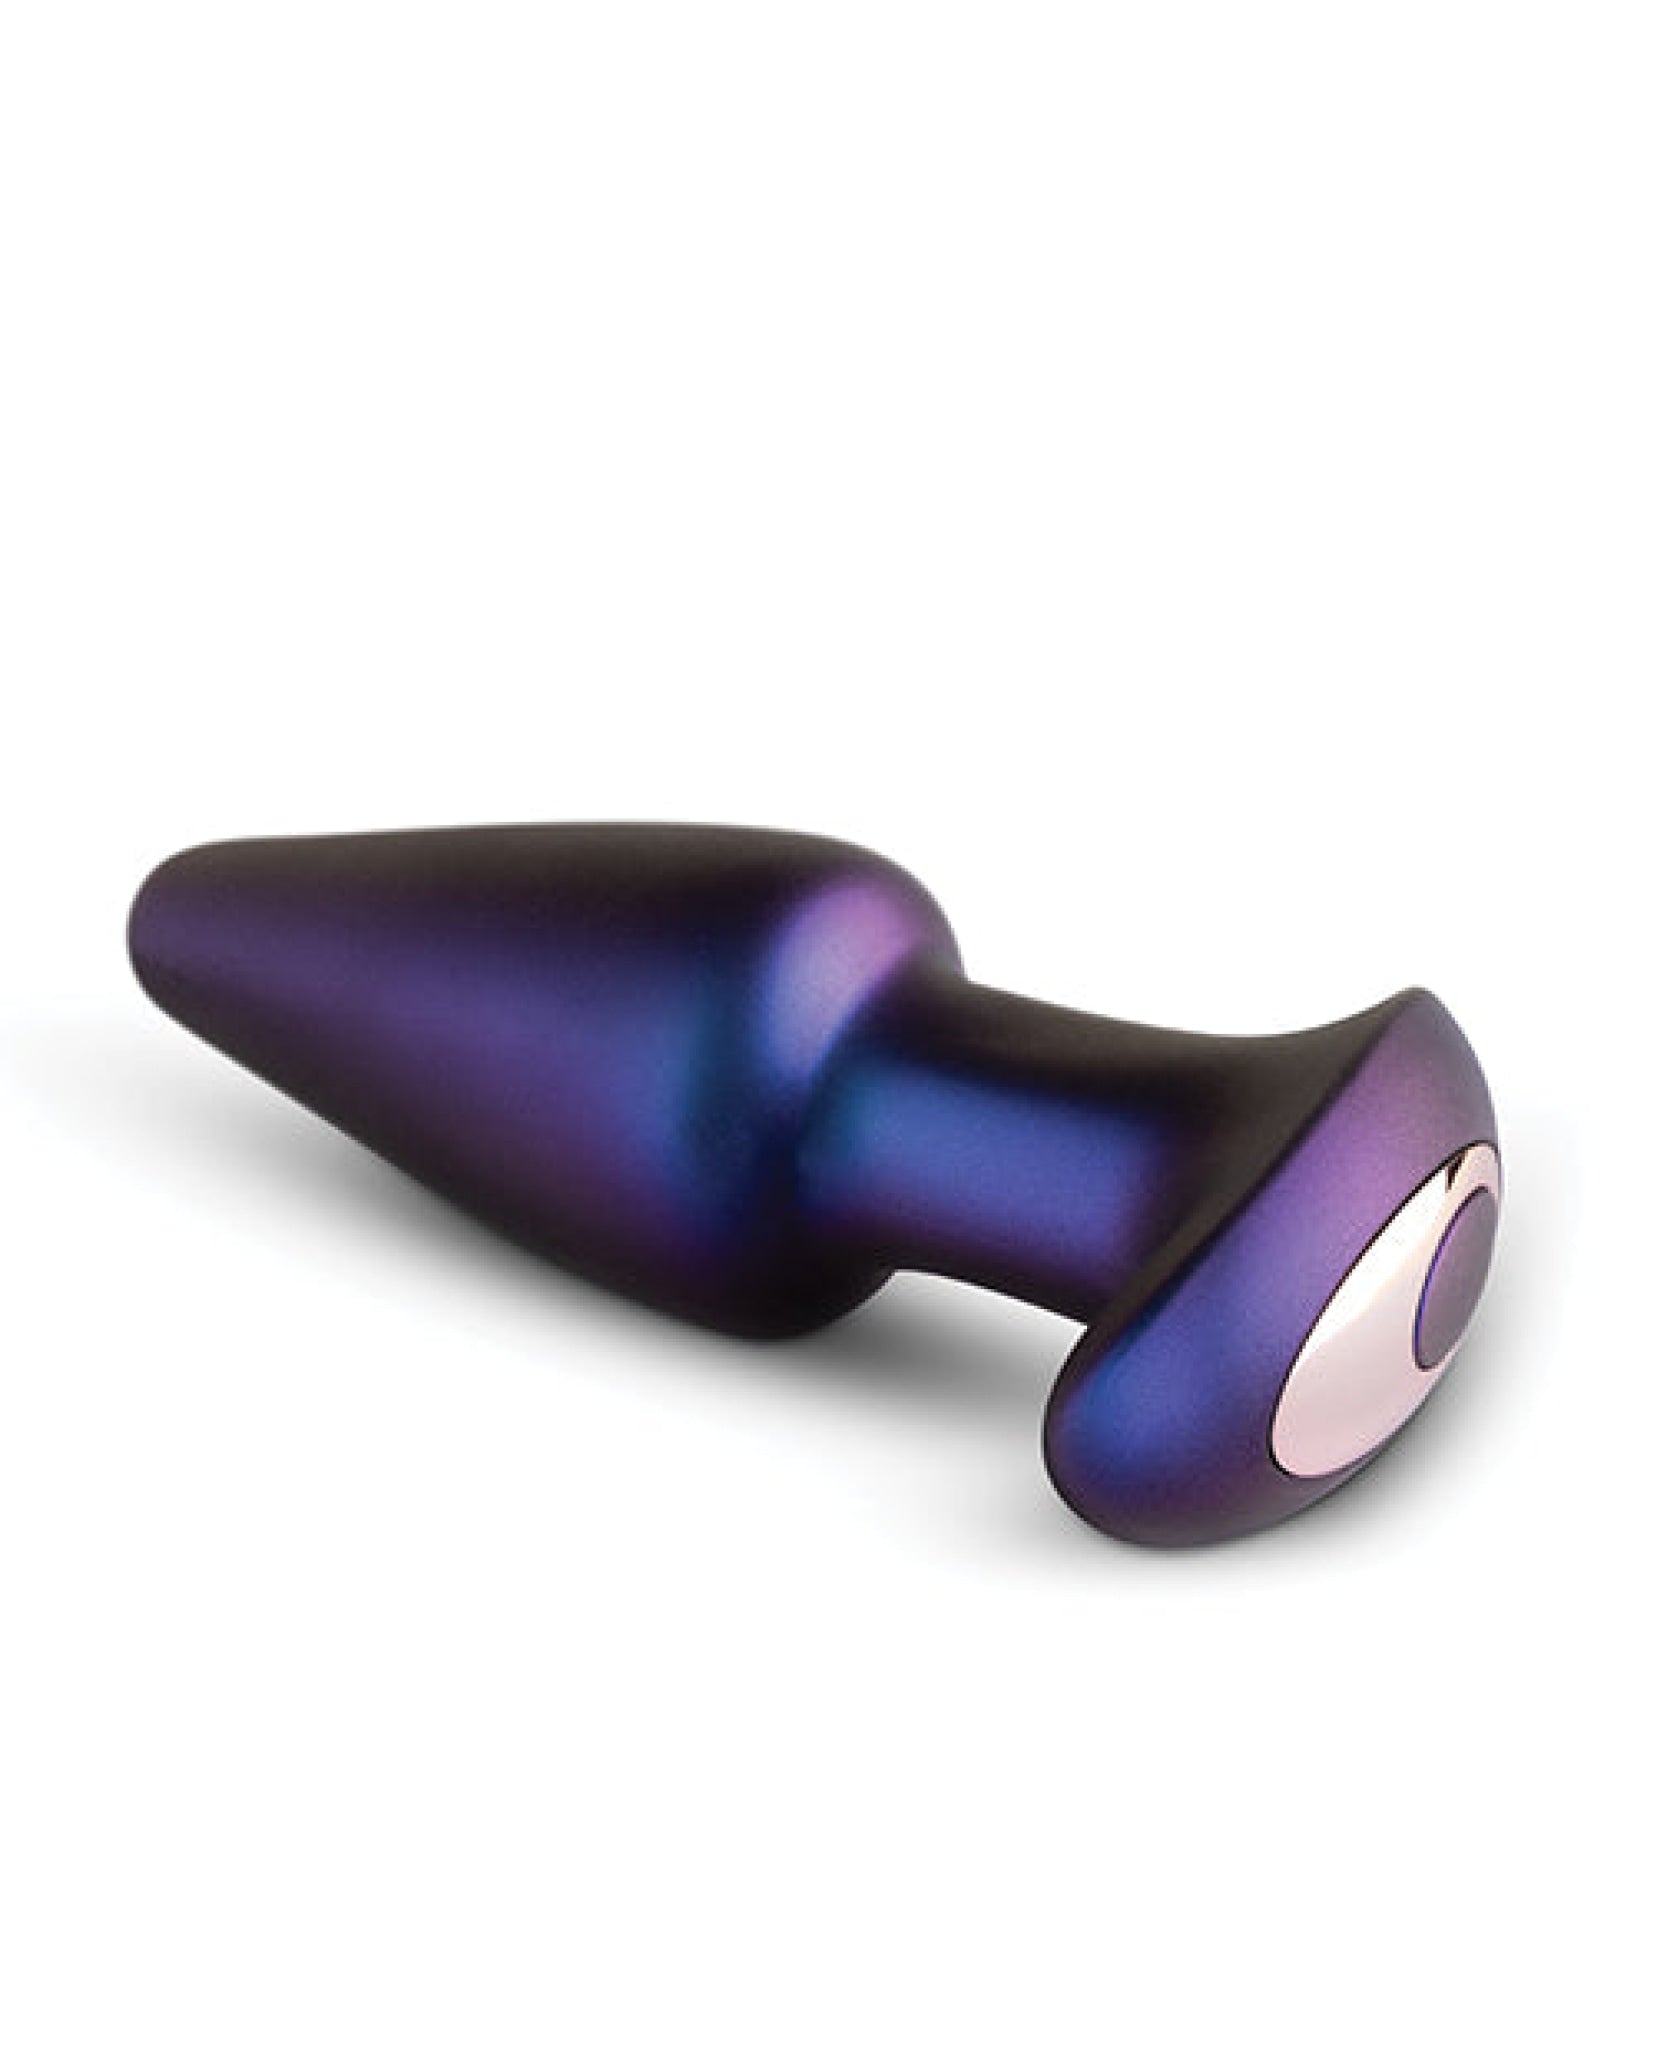 Hueman Meteoroid Rimming Anal Plug - Purple Easy Toys